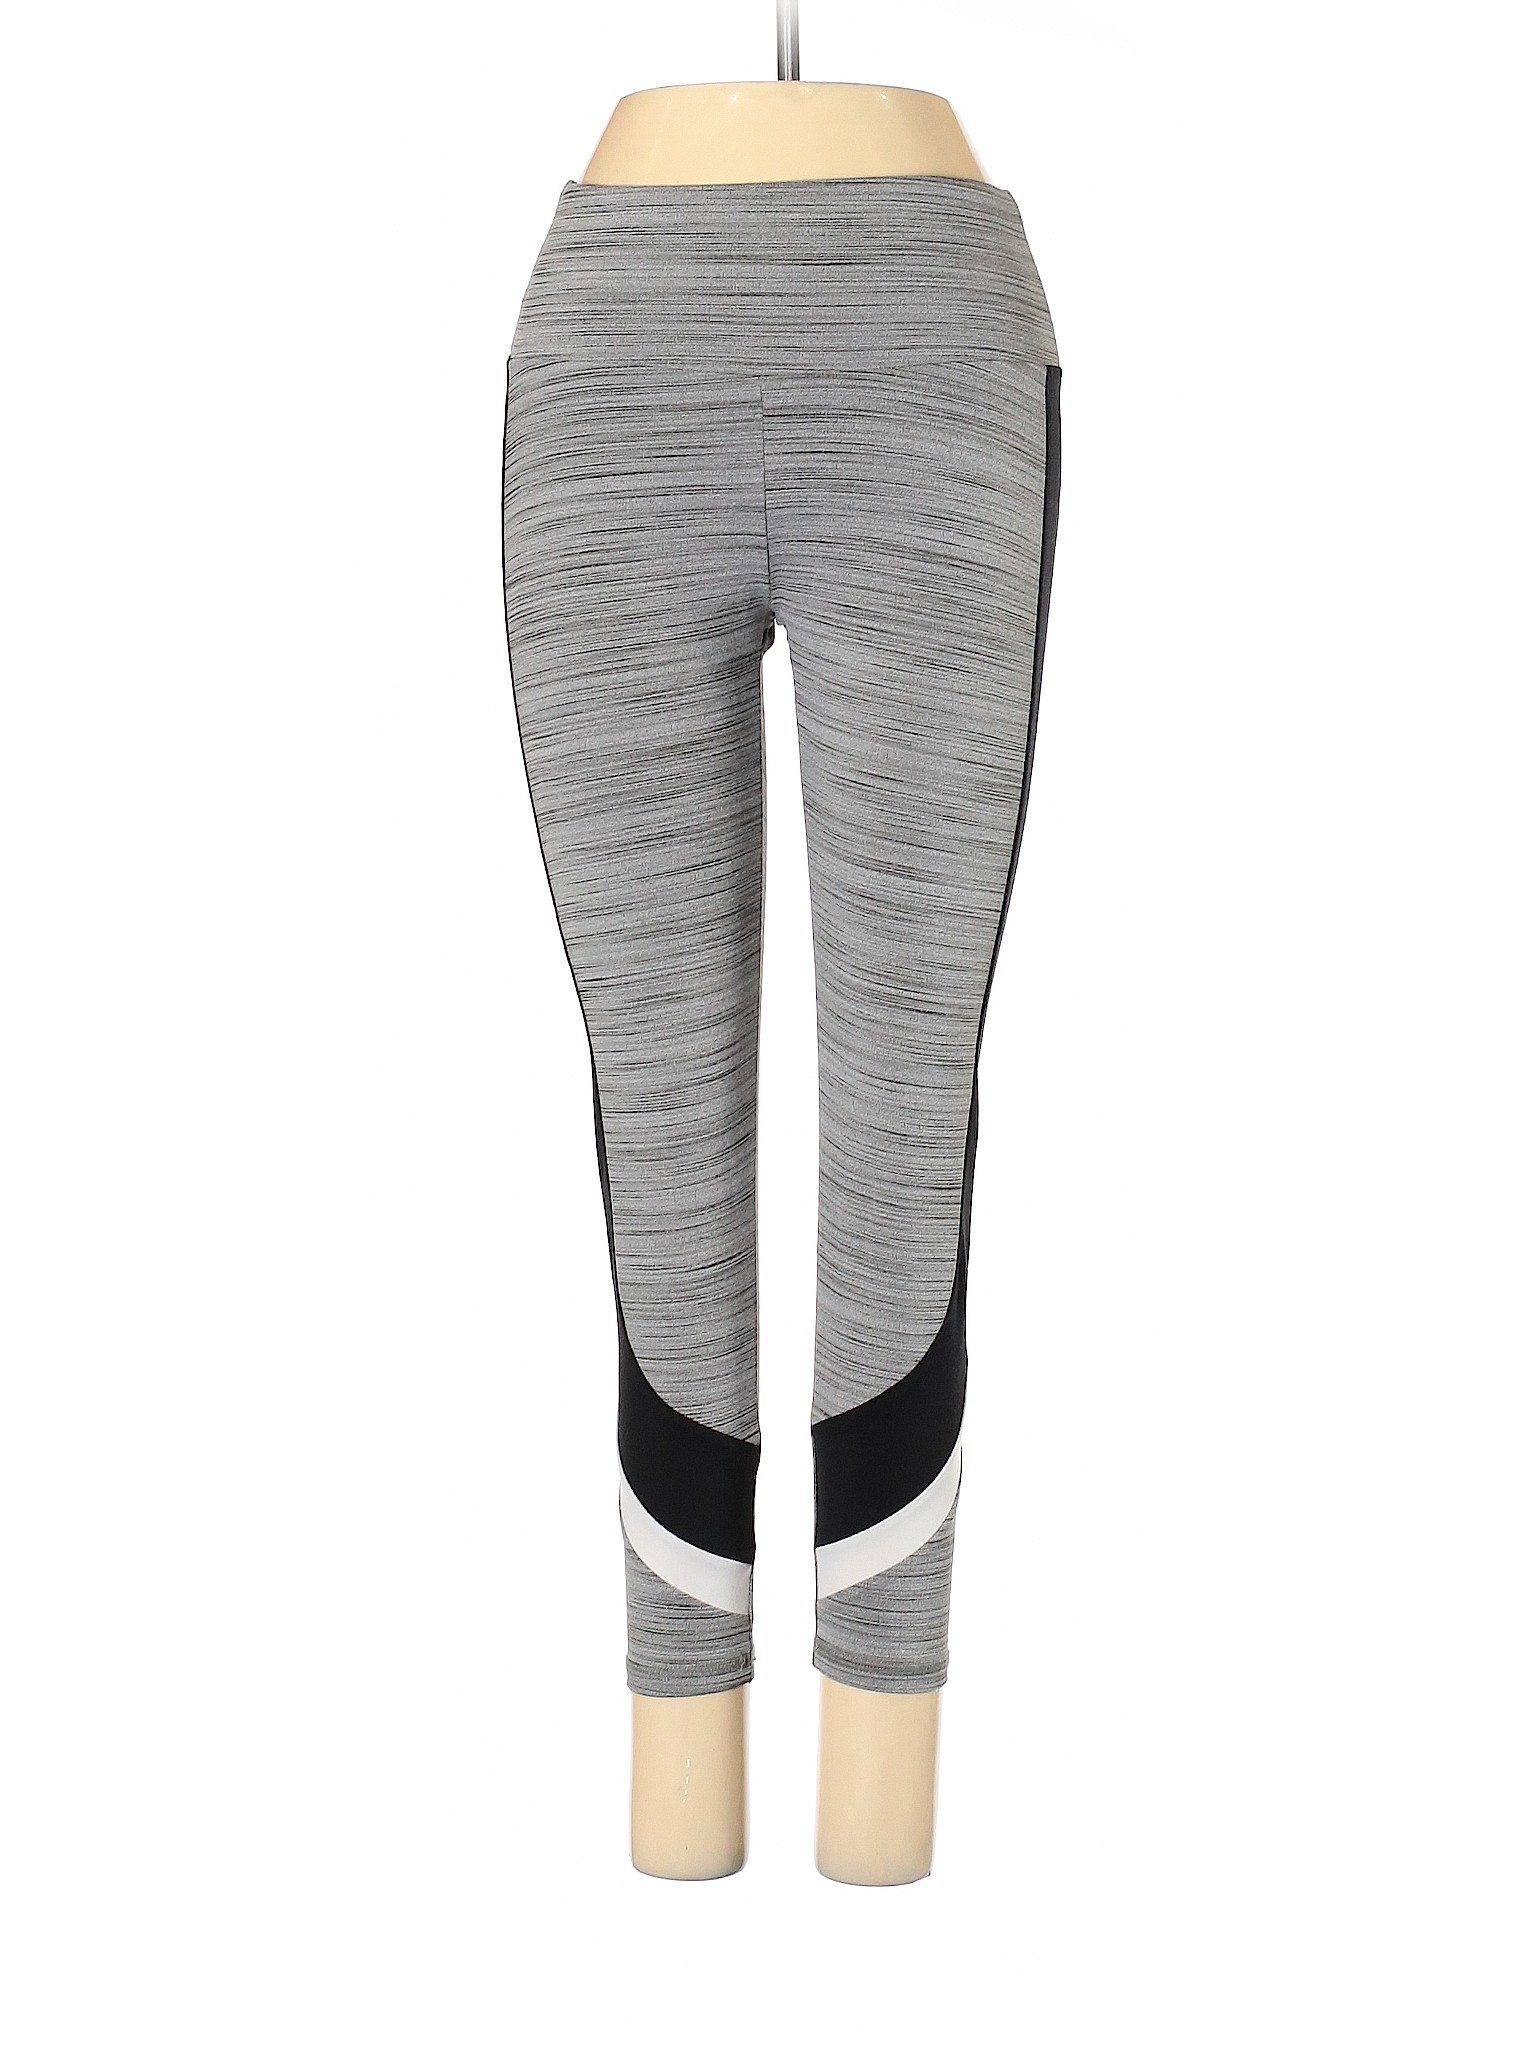 Assorted Brands Women Gray Active Pants S | eBay